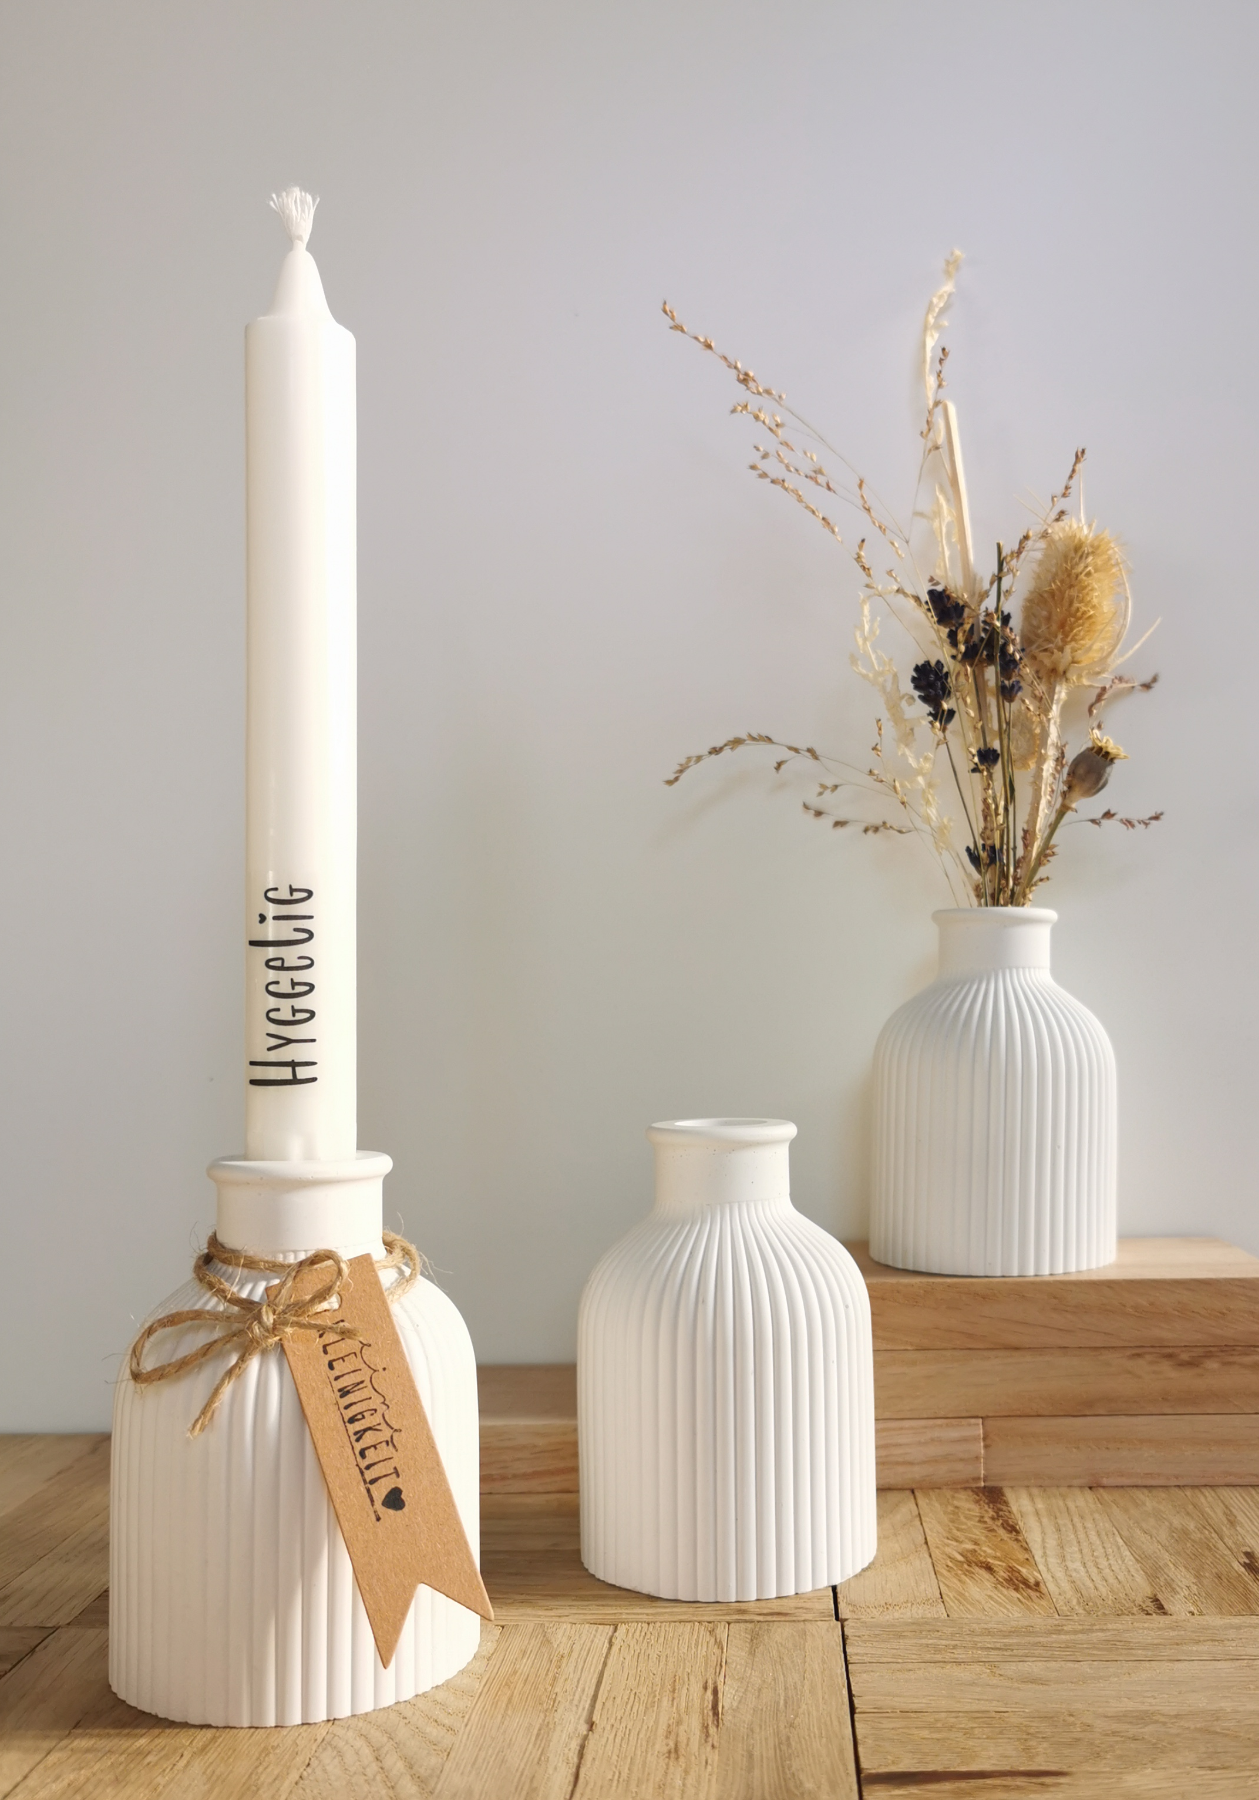 Vase und Kerzenhalter in einem, Kombi für Trockenblumen und Stabkerzen, Raysin